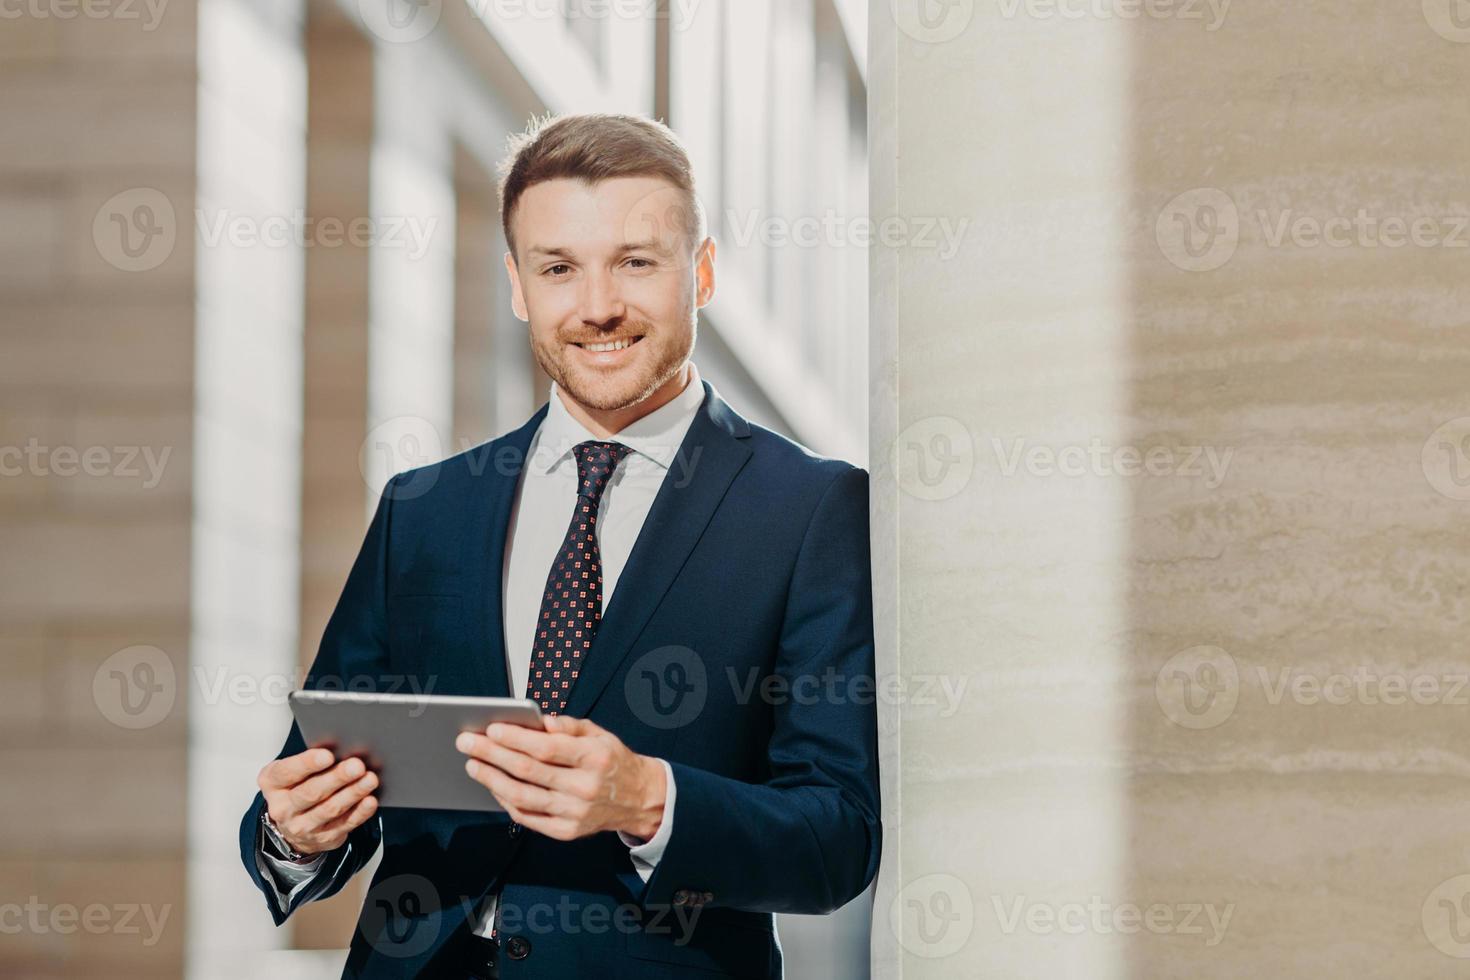 un avocat masculin joyeux et confiant lit les nouvelles commerciales, a un sourire doux, vêtu de vêtements formels, pose en milieu urbain. un homme d'affaires vérifie ses e-mails ou met à jour son profil sur une tablette numérique photo